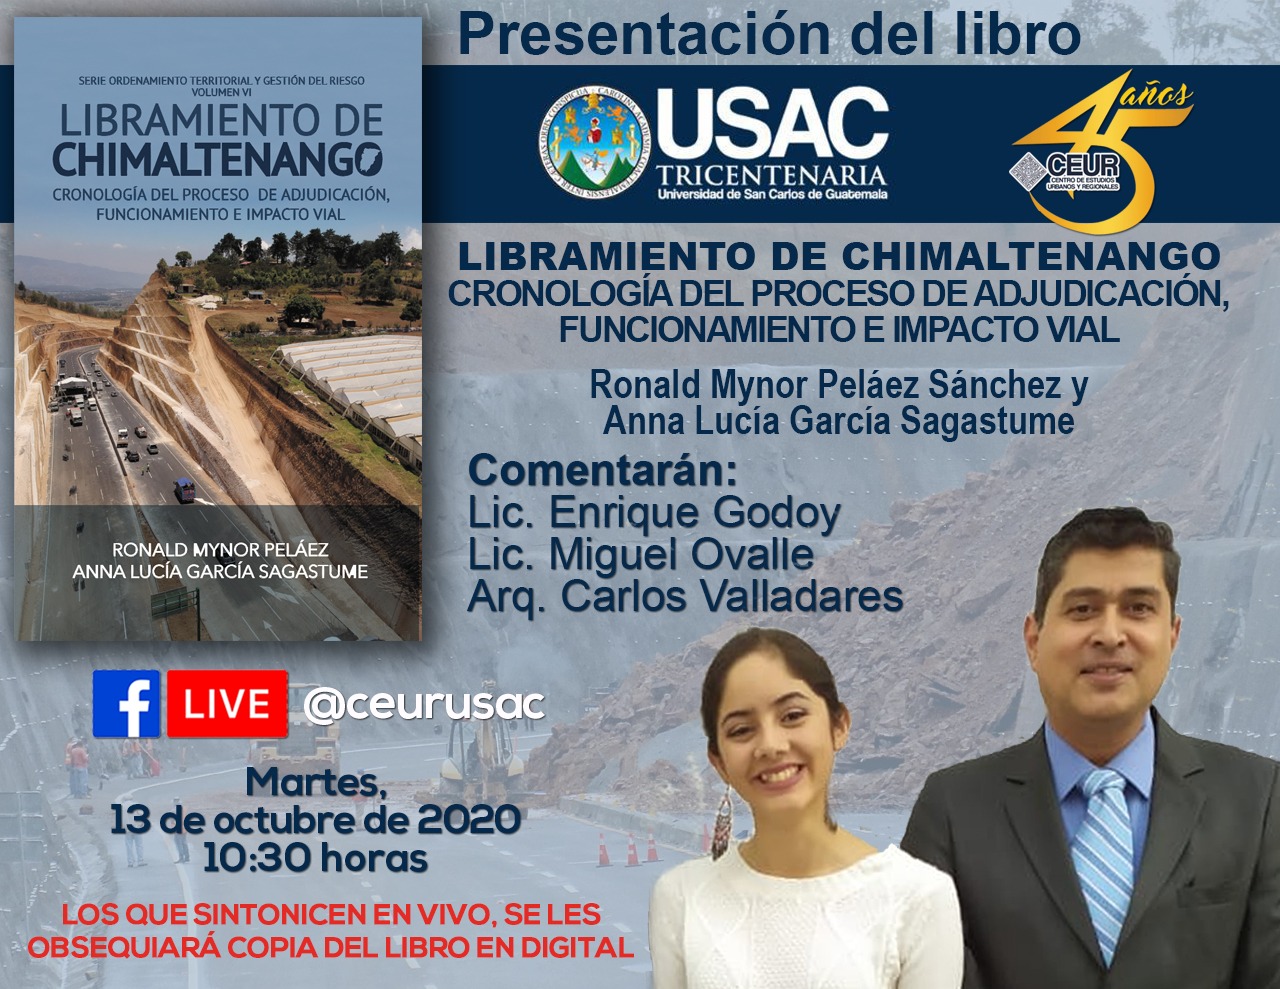 PRESENTACIÓN DEL LIBRO: Libramiento de Chimaltenango, cronología del proceso de adjudicación, funcionamiento e impacto vial #CEUR